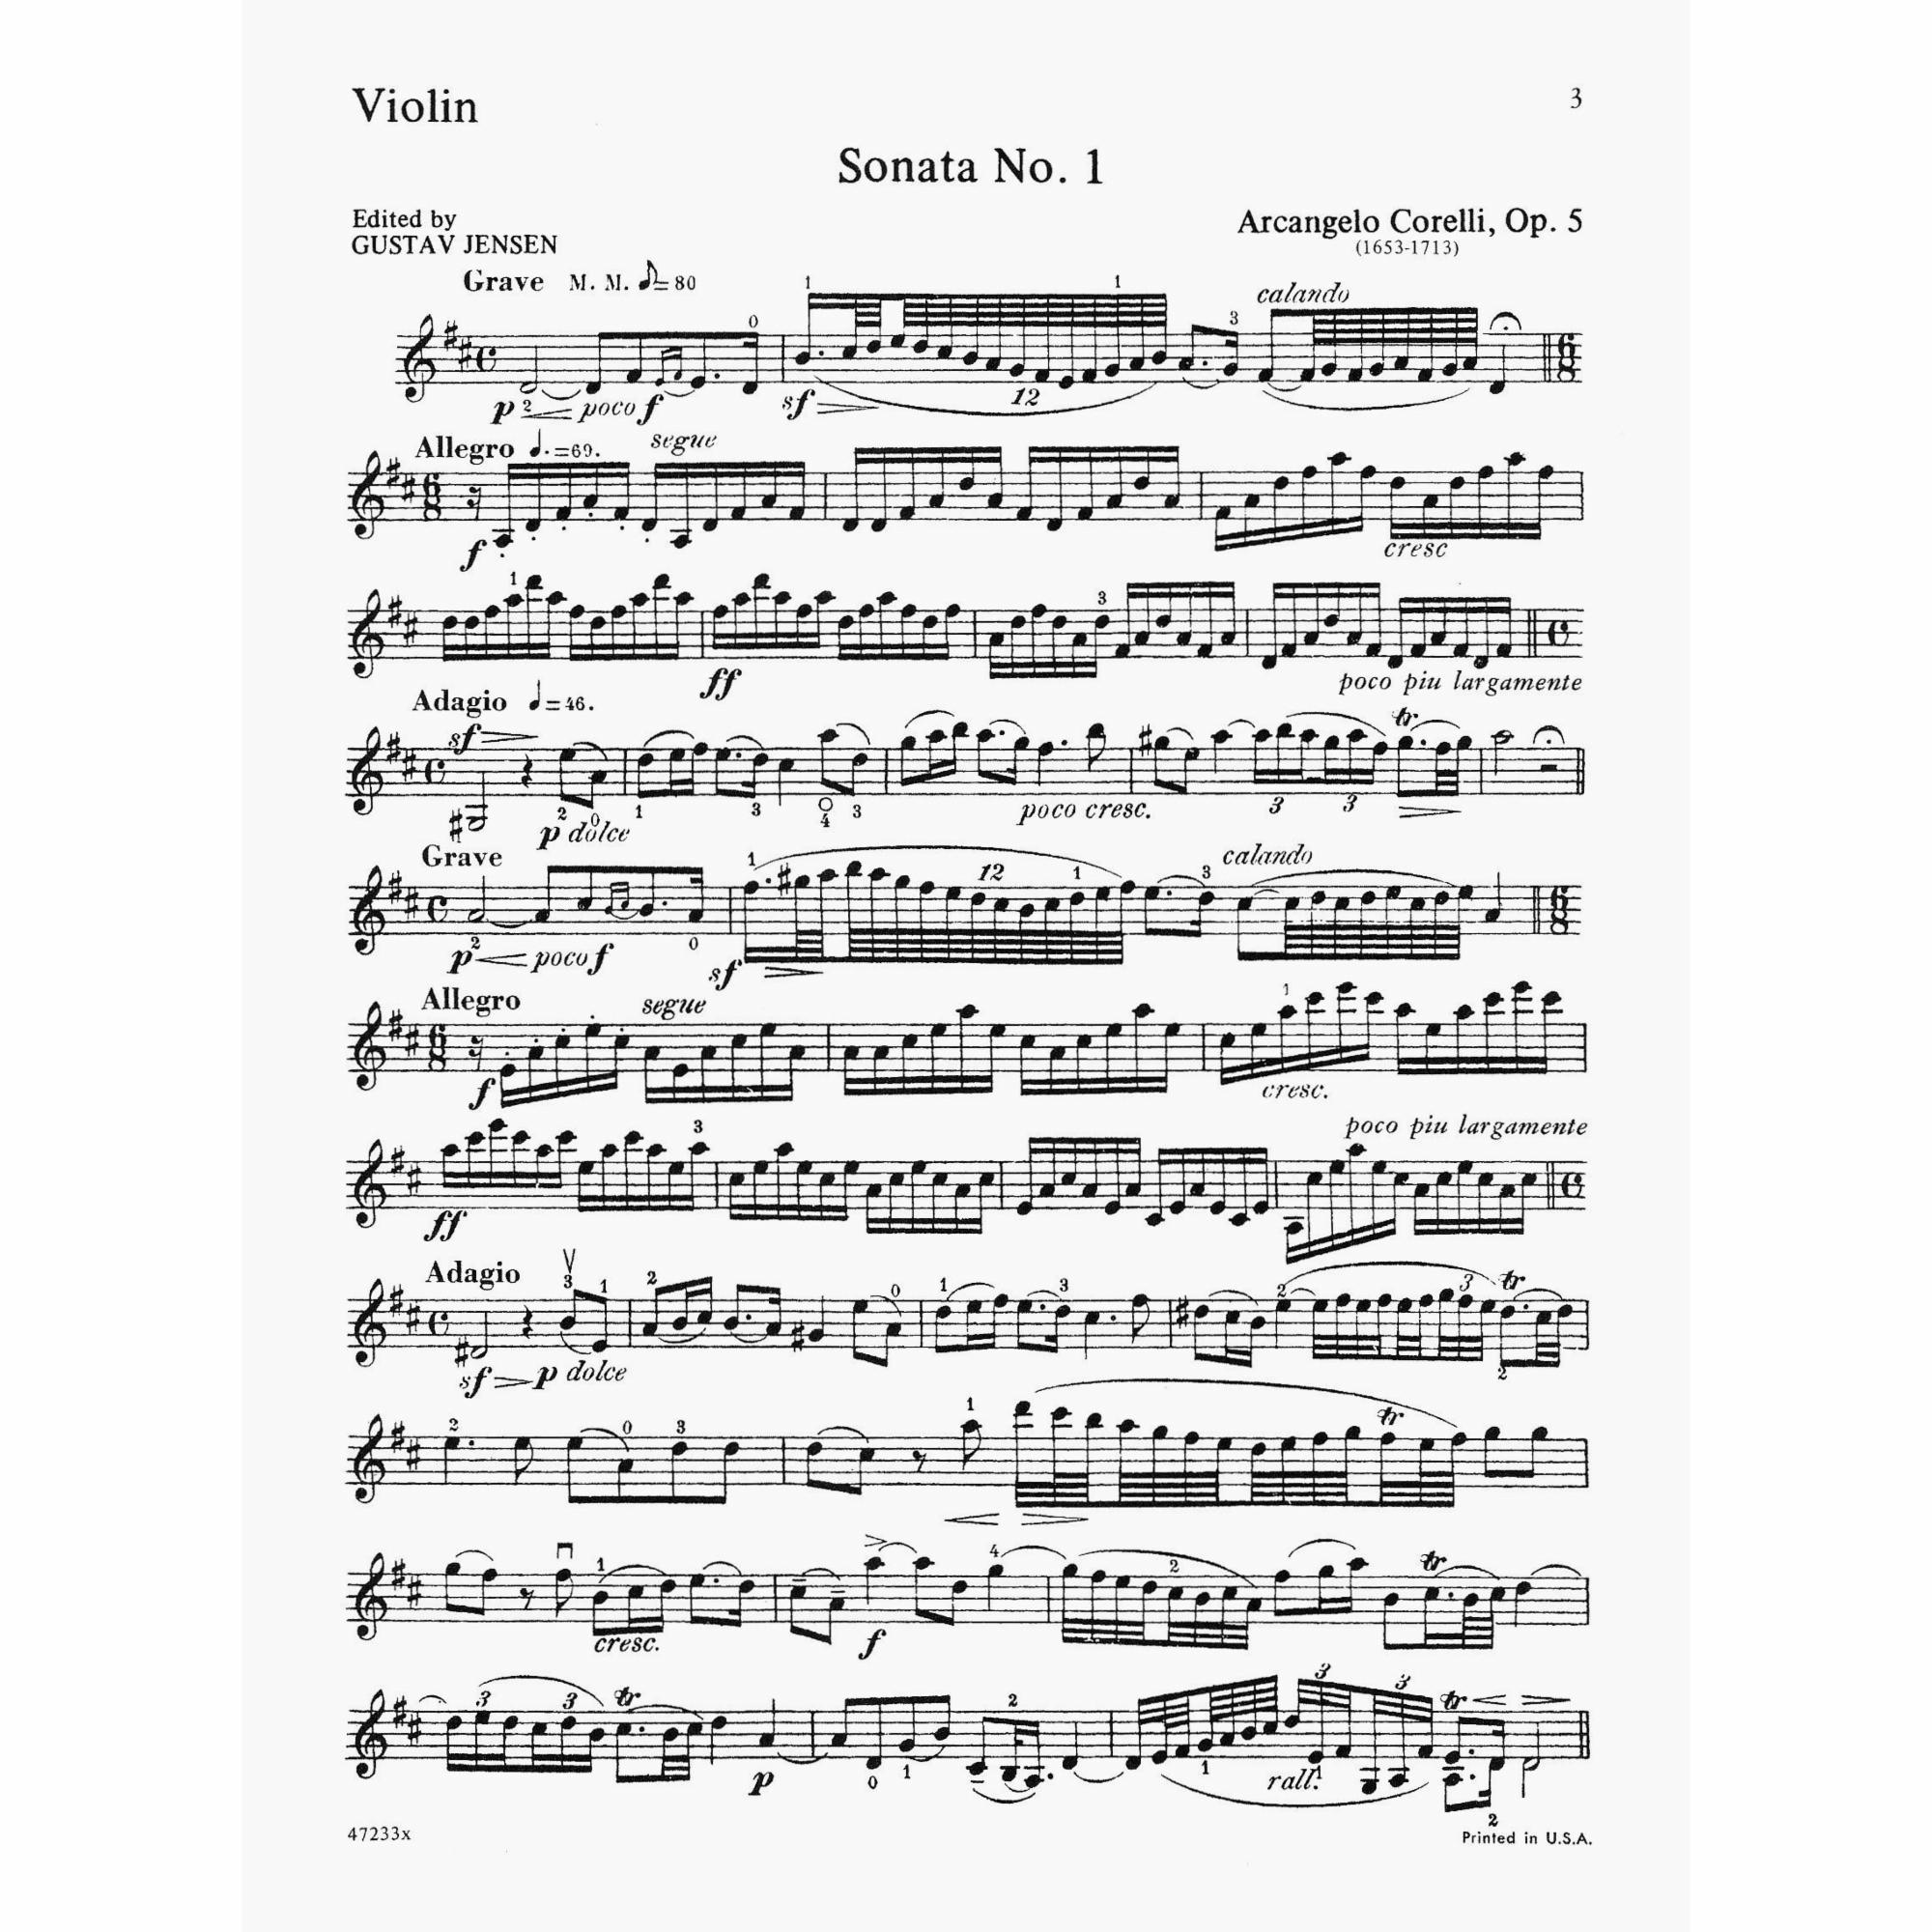 Sample: Vol. I, Violin